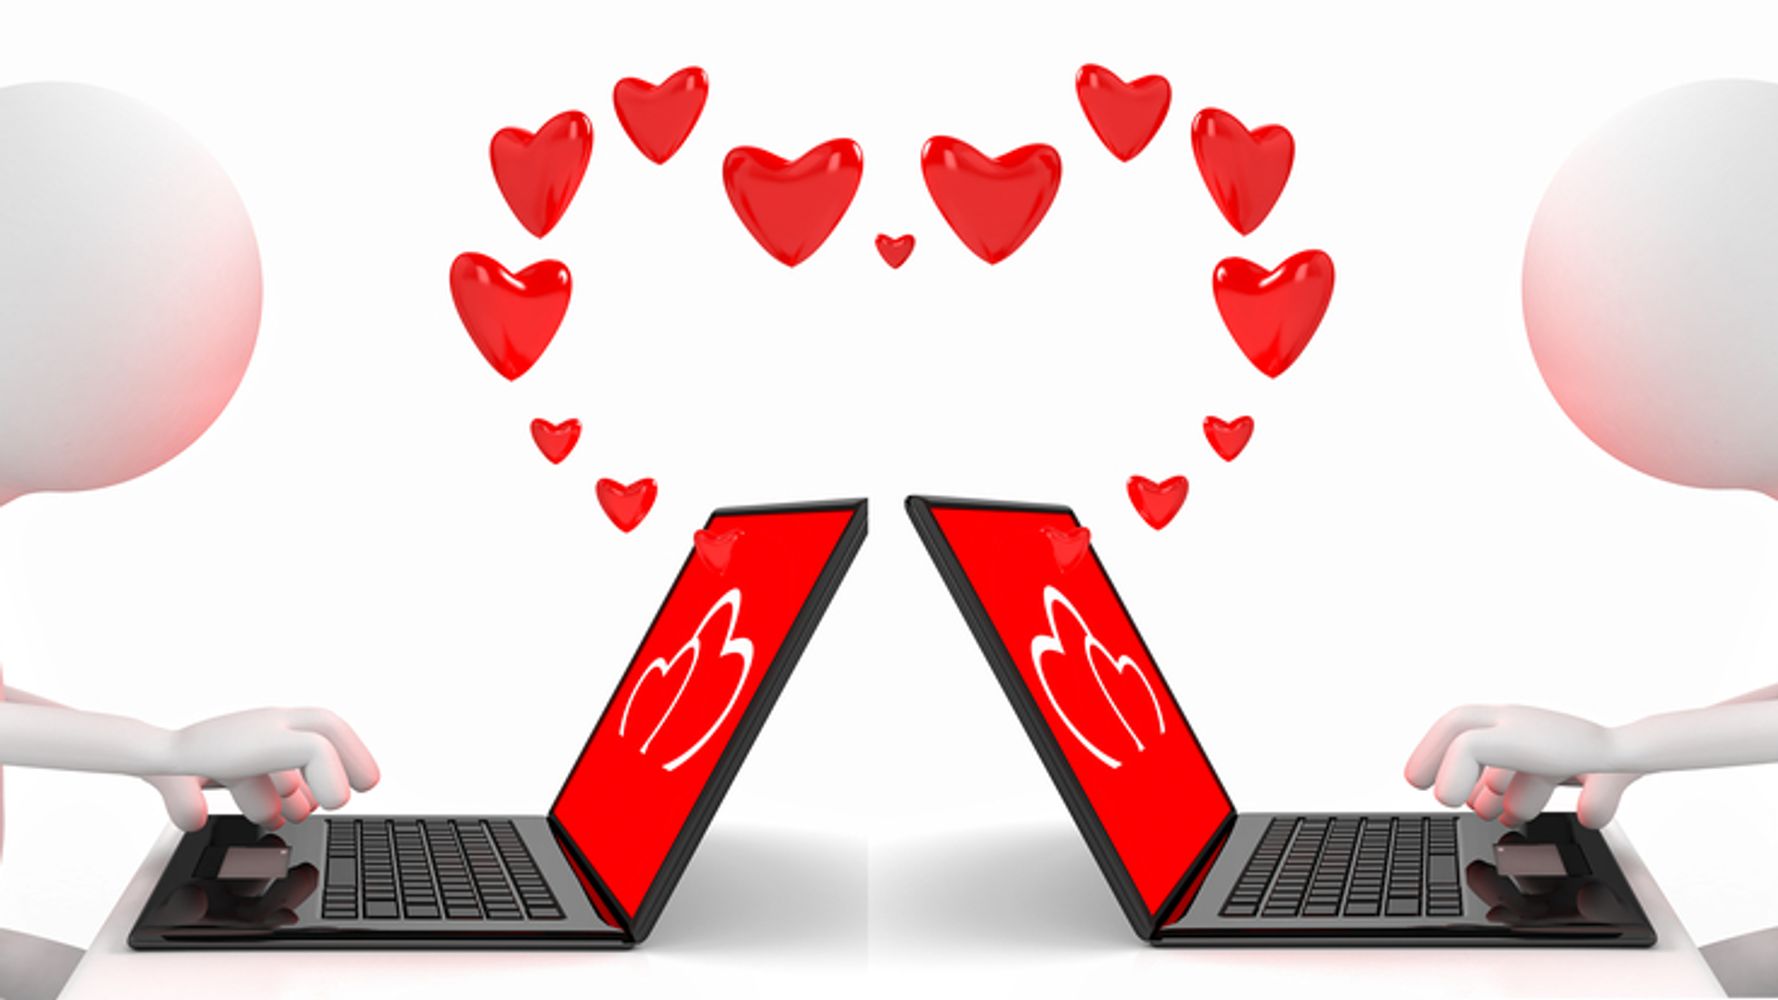 Социальные сети для знакомств. Интернет любовь. Интернетная любовь. Виртуальная любовь в сети. Общение в интернете мультяшное изображение.